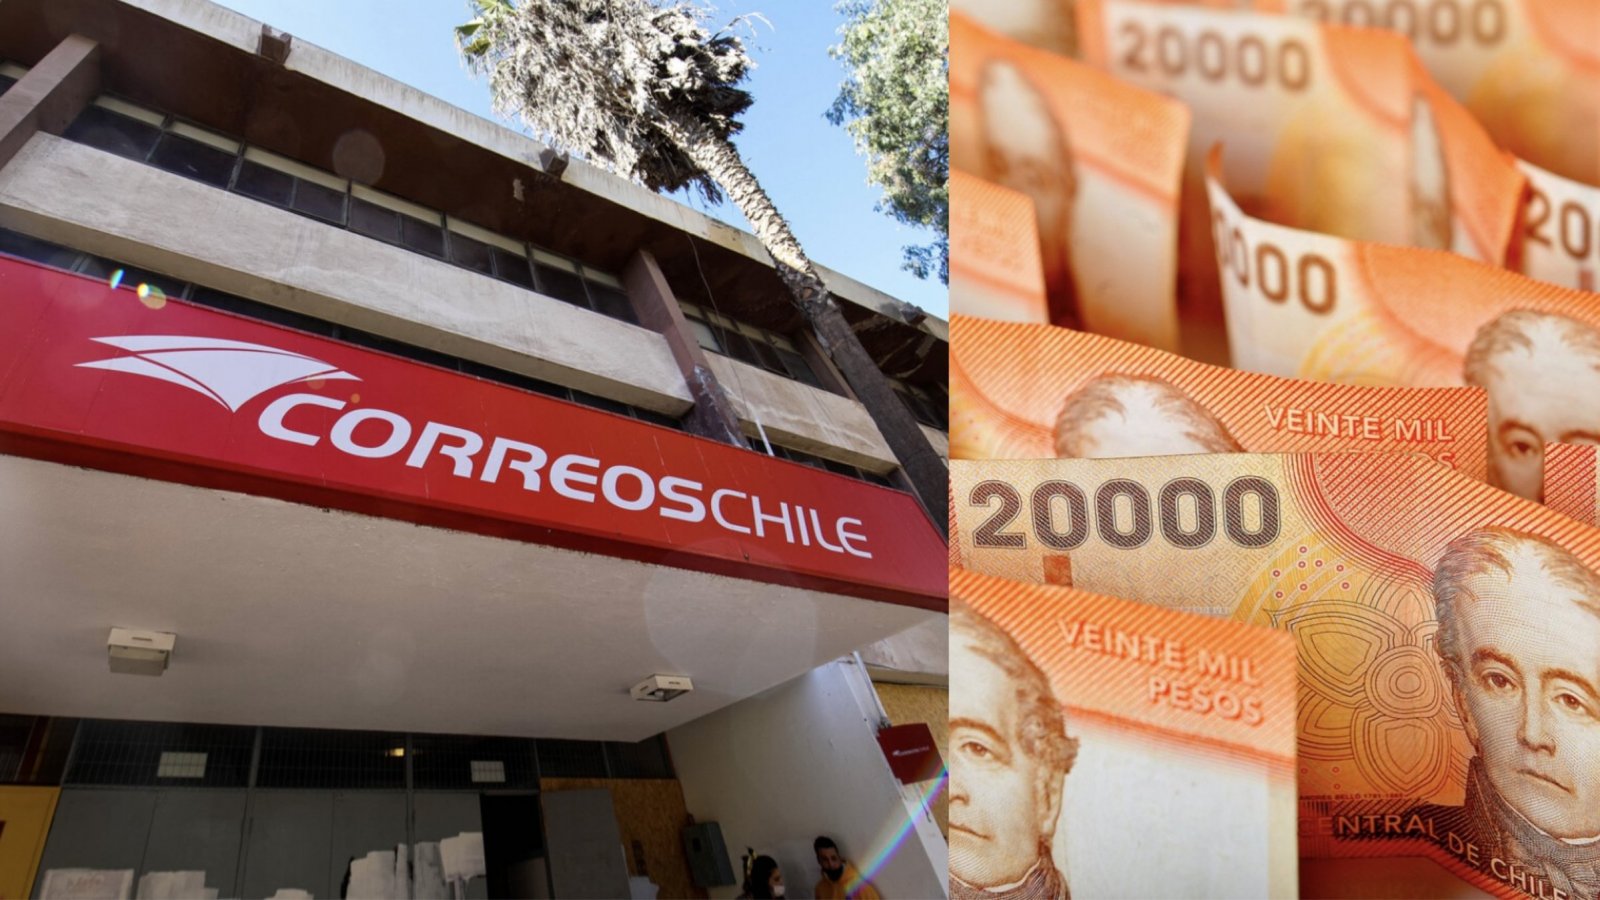 Sucursal de Correos de Chile y billetes.